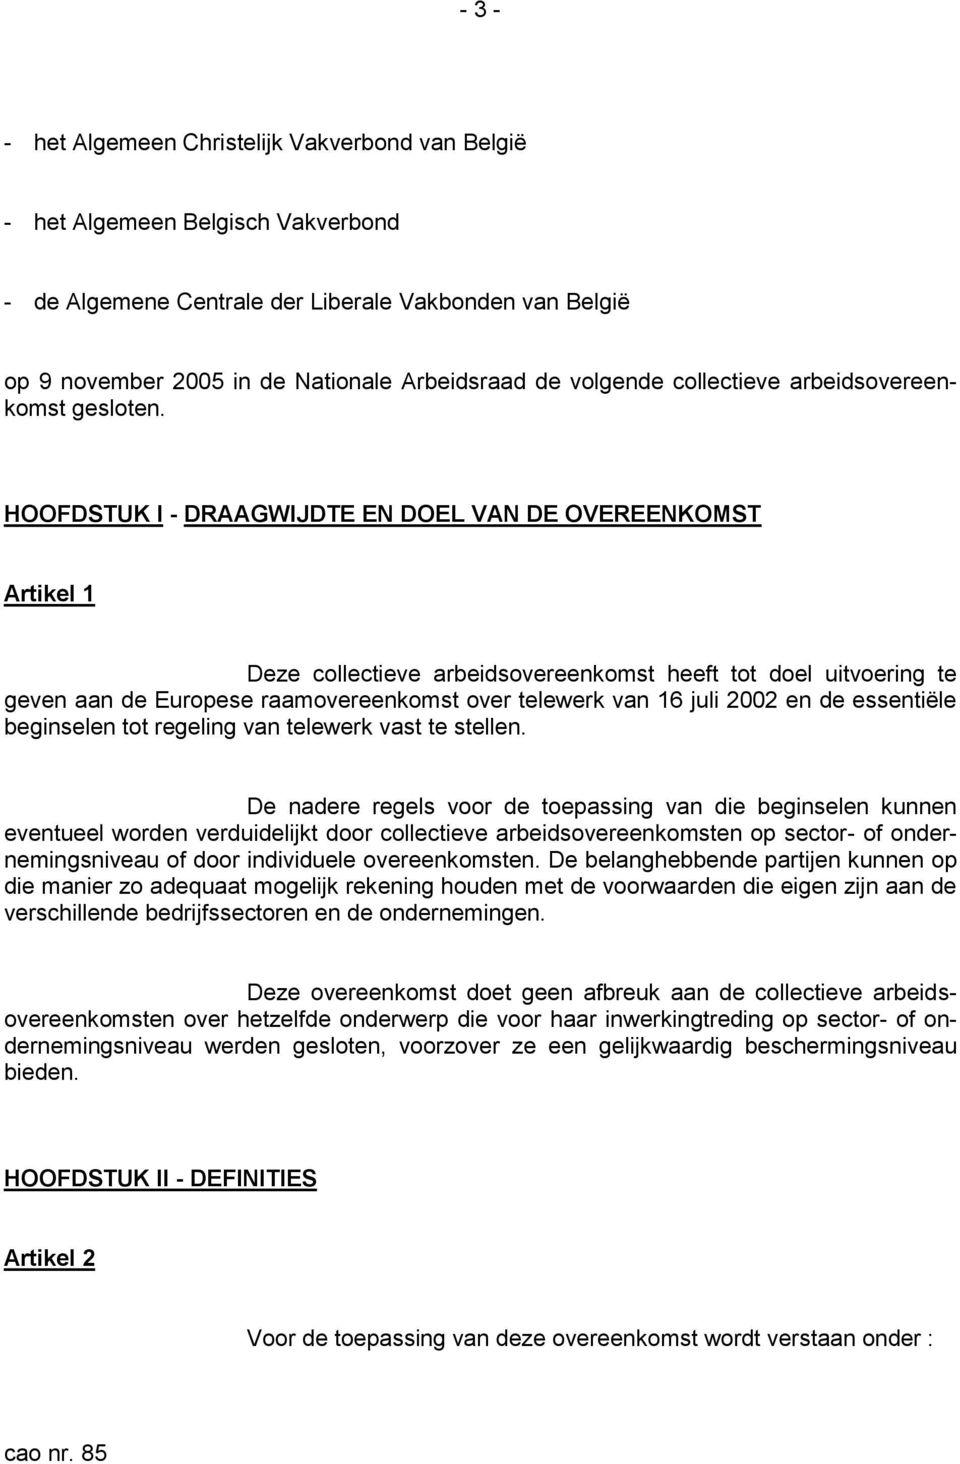 HOOFDSTUK I - DRAAGWIJDTE EN DOEL VAN DE OVEREENKOMST Artikel 1 Deze collectieve arbeidsovereenkomst heeft tot doel uitvoering te geven aan de Europese raamovereenkomst over telewerk van 16 juli 2002